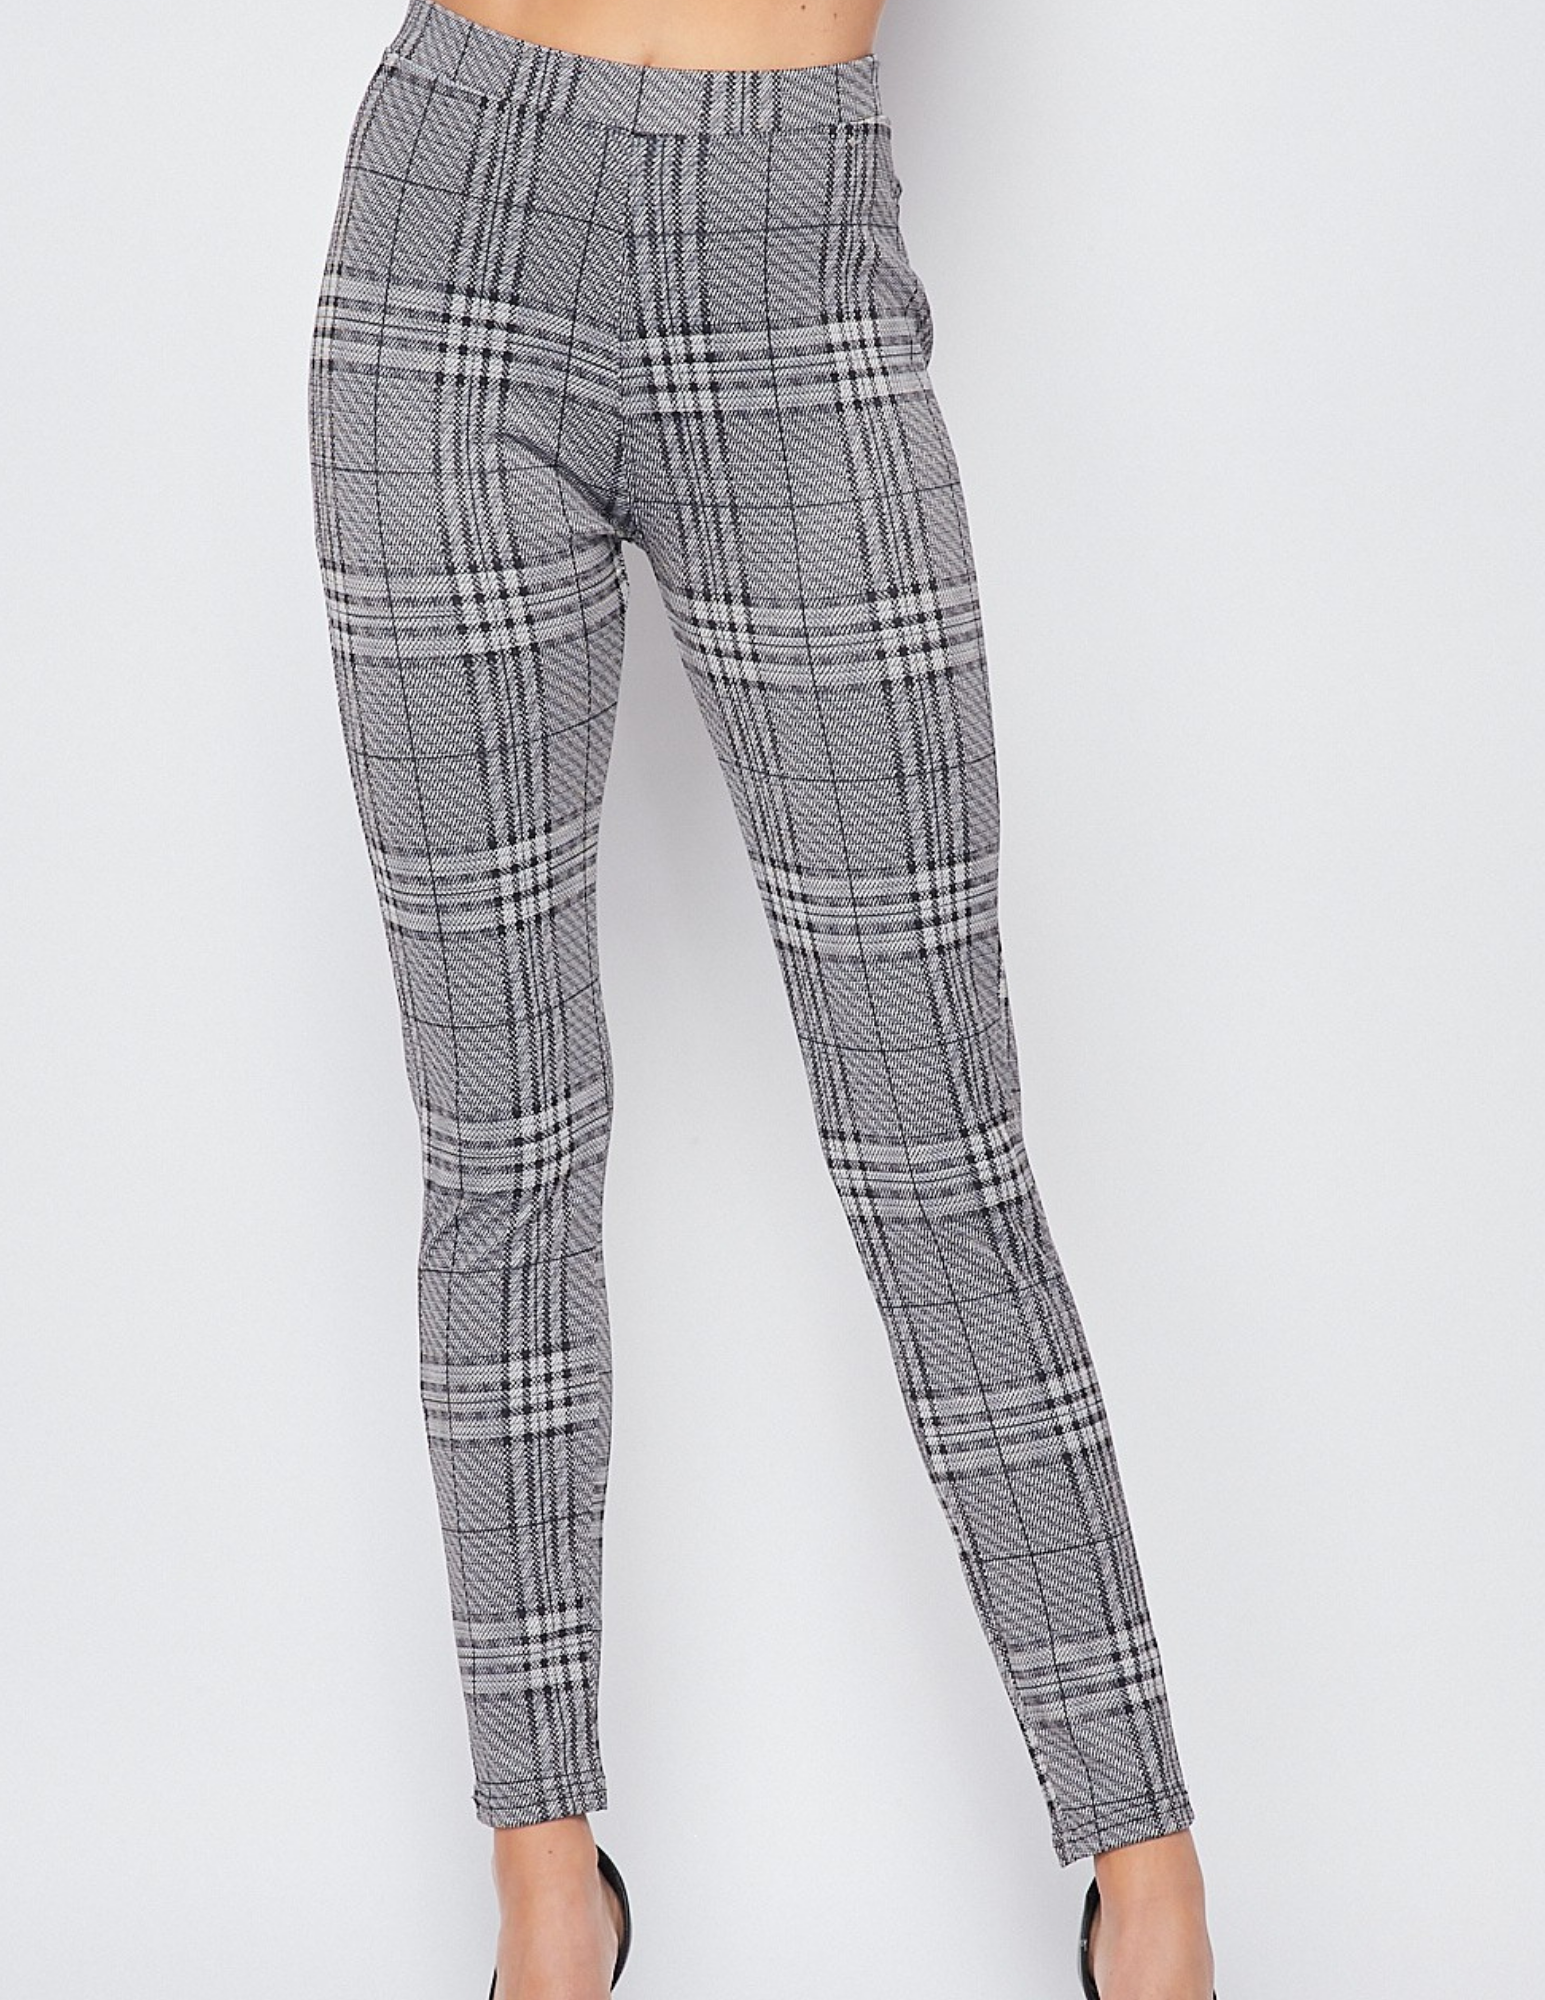 Buy Grey Skinny Fit Trousers 2 Pack 7 years | School trousers | Tu